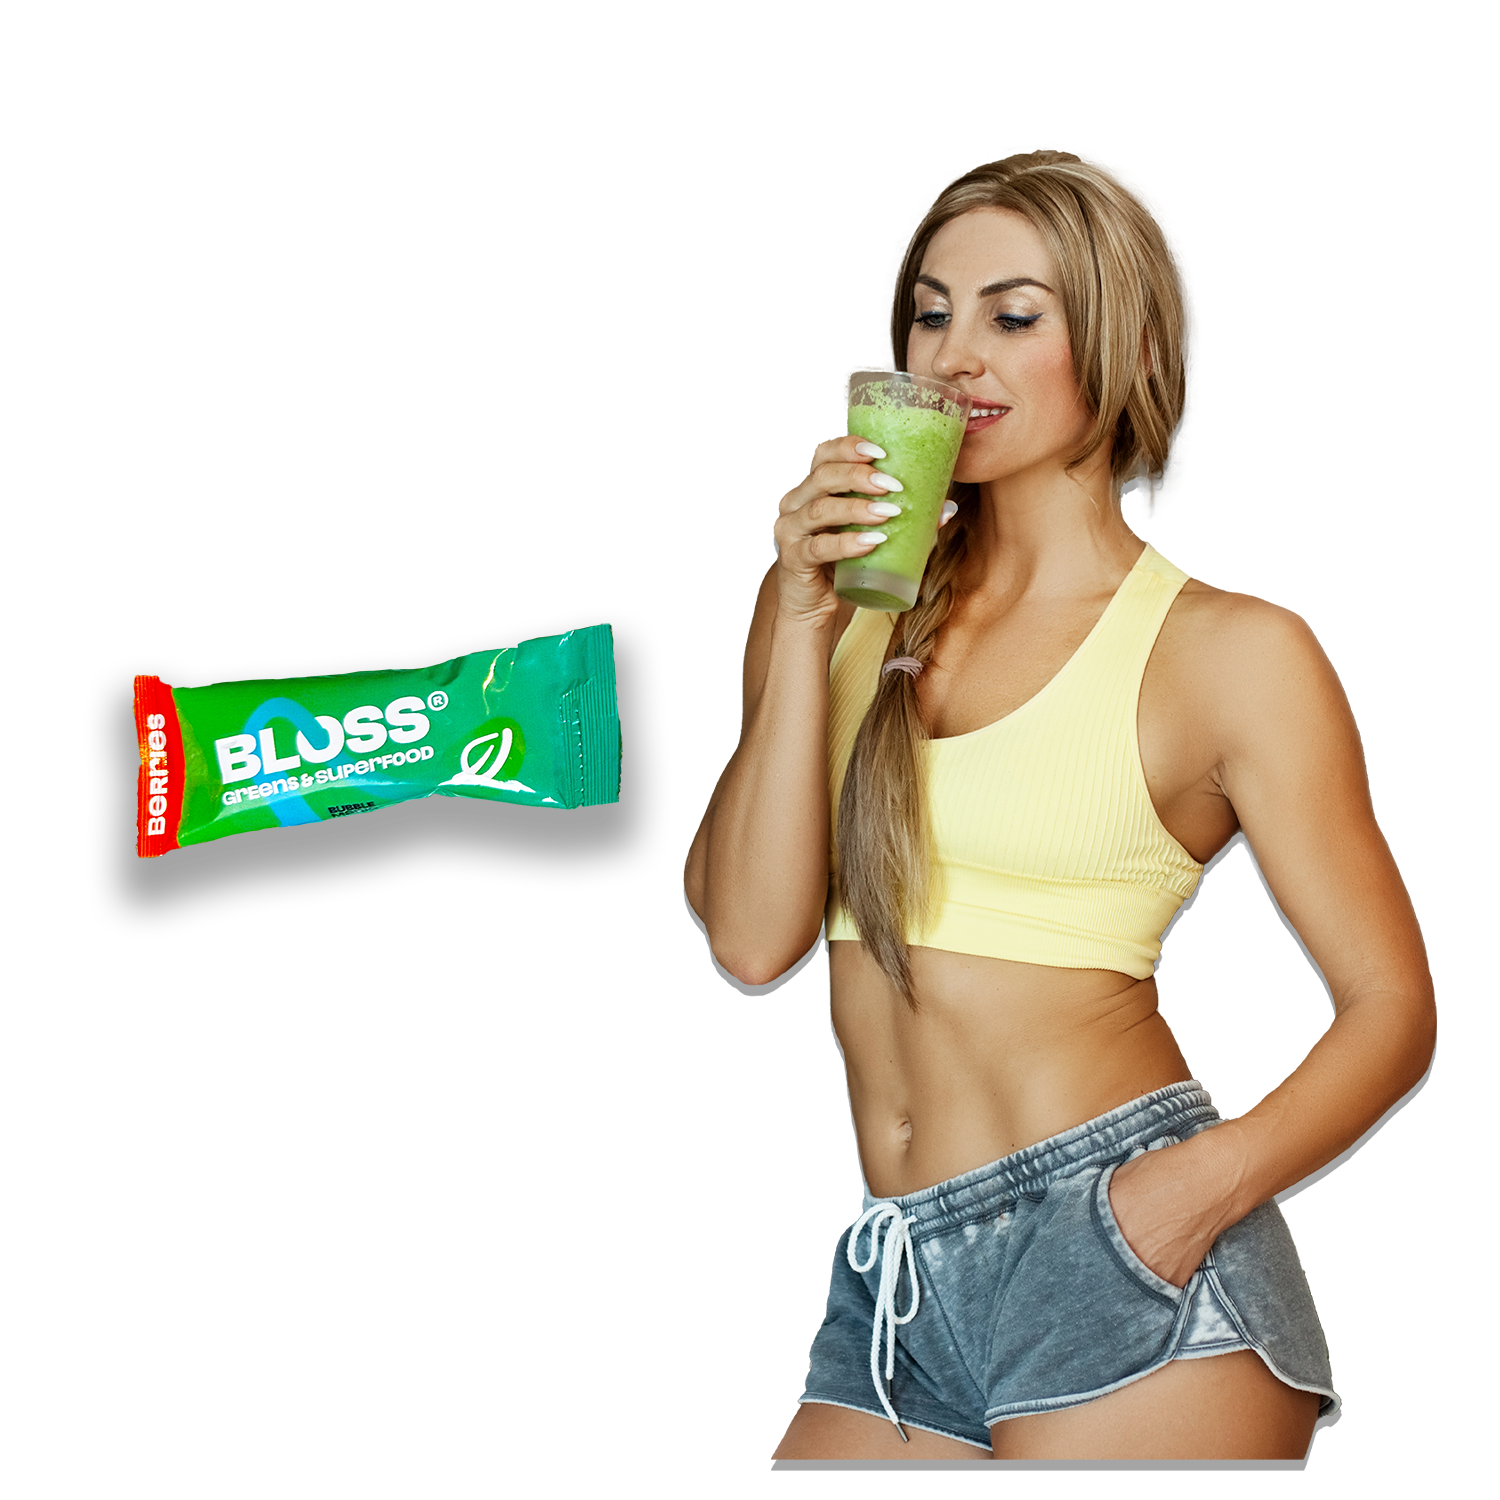 BLOSS Super Greens Pulver Smoothie Mix, 30 Portionen